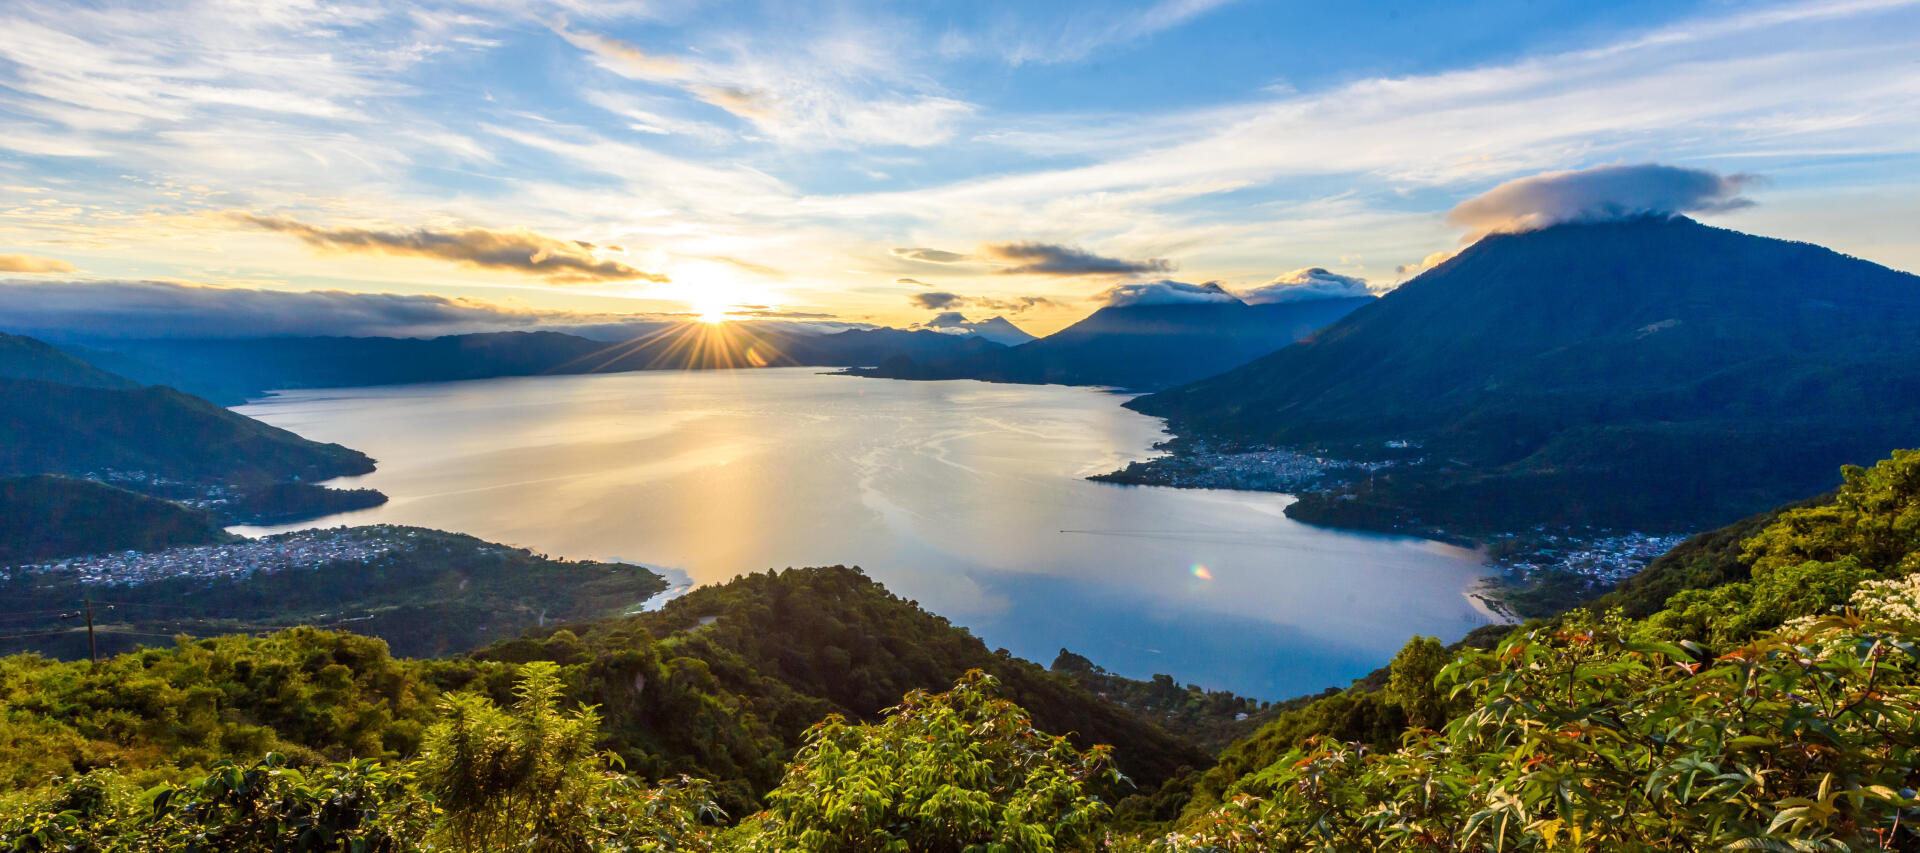 Voyage au Guatemala : randonnée autour du lac atitlan